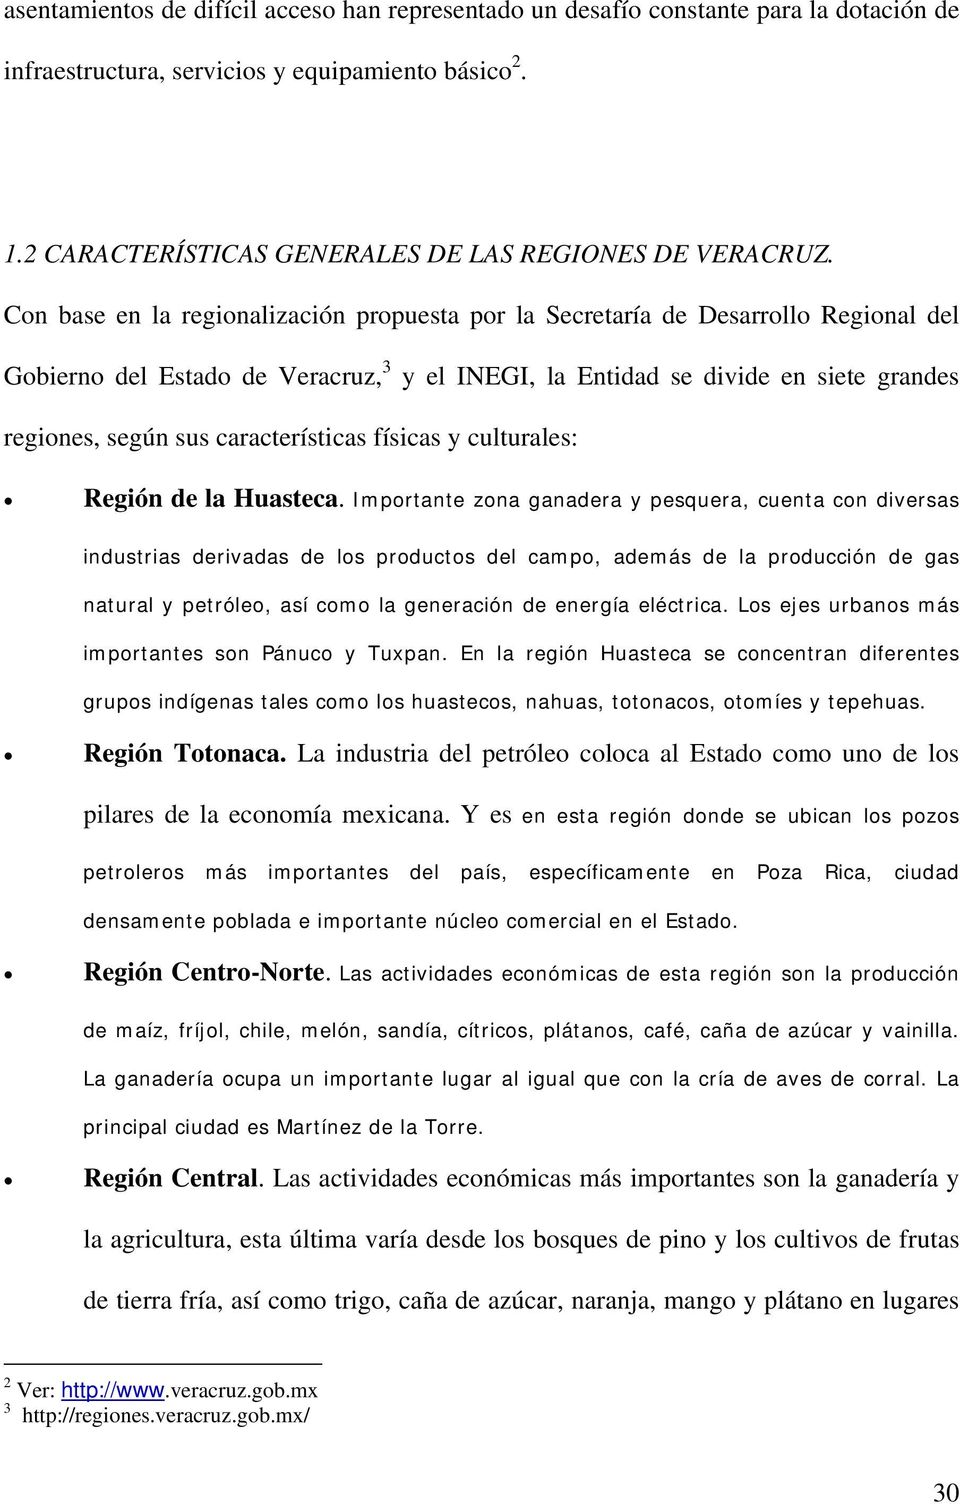 Con base en la regionalización propuesta por la Secretaría de Desarrollo Regional del 3 Gobierno del Estado de Veracruz,TP PT y regiones, según sus características físicas y culturales: el INEGI, la